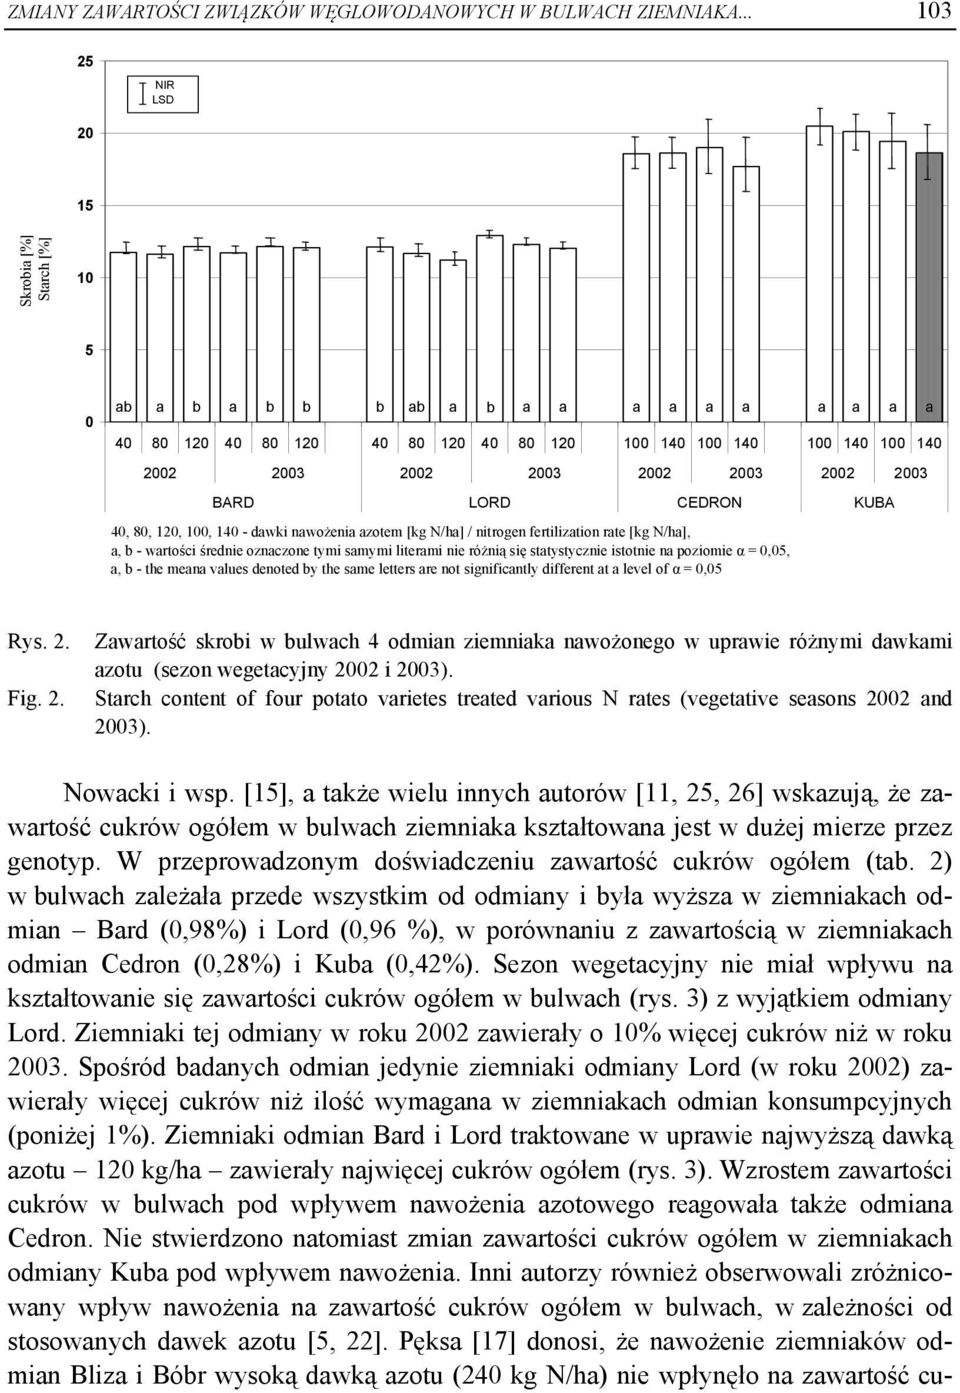 2002 2003 BARD LORD CEDRON KUBA 40, 80, 120, 100, 140 - dawki nawożenia azotem [kg N/ha] / nitrogen fertilization rate [kg N/ha], a, b - wartości średnie oznaczone tymi samymi literami nie różnią się